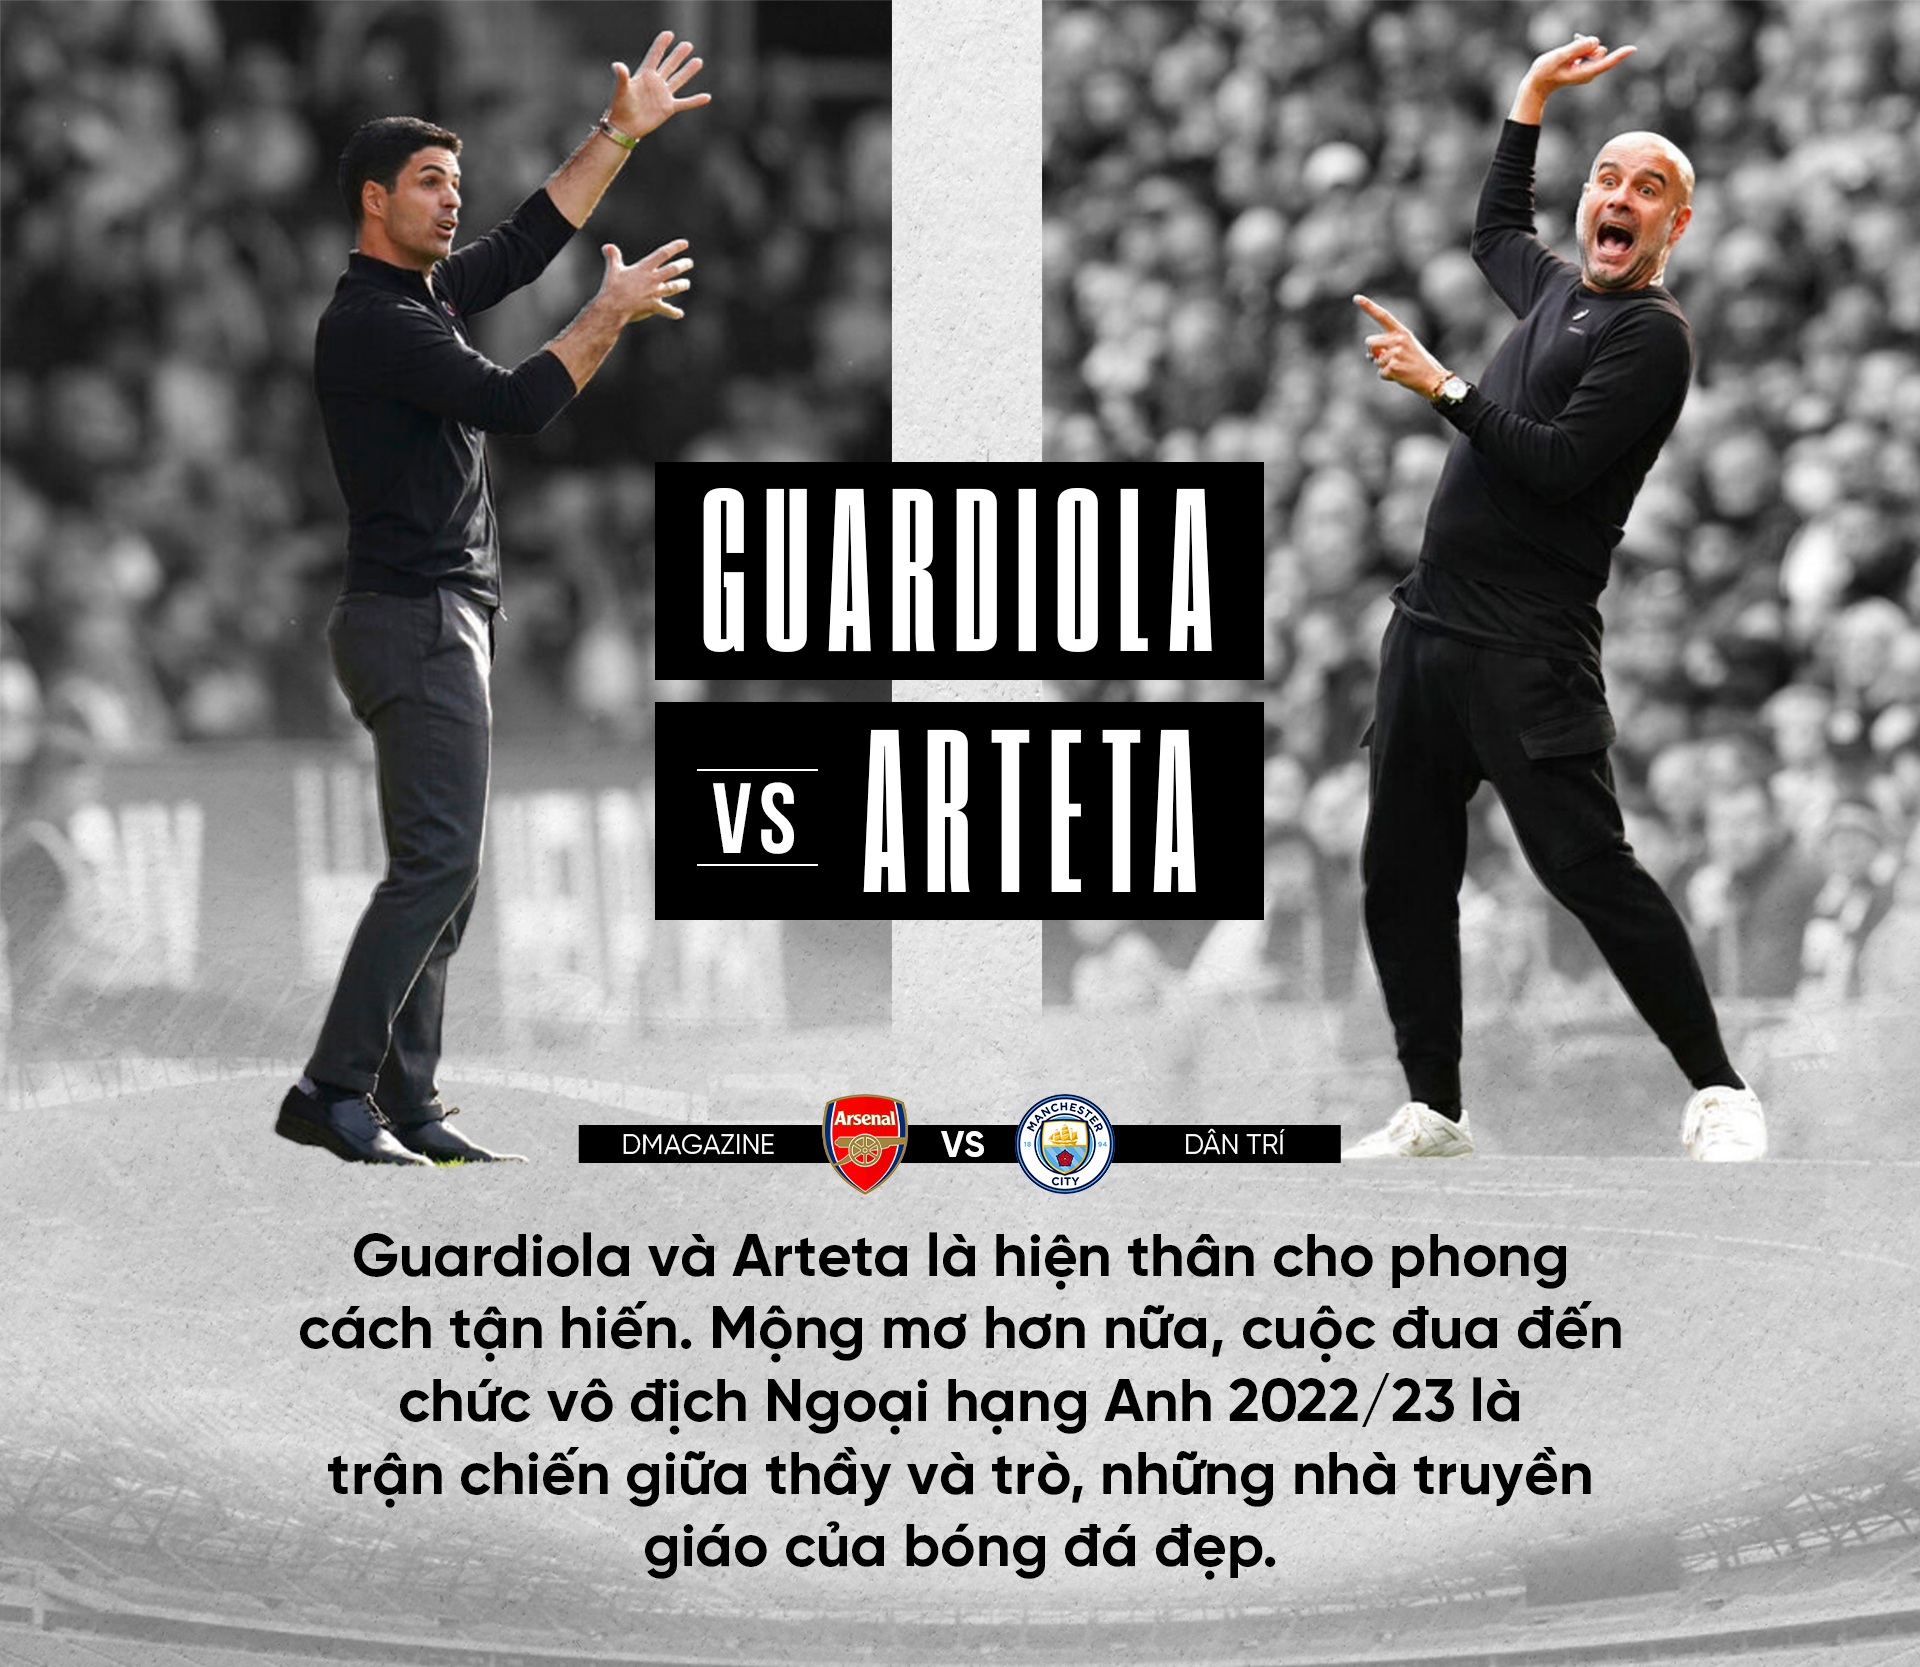 Cuộc đua vô địch Premier League: Độc lạ Arteta đấu thực dụng Guardiola - 15